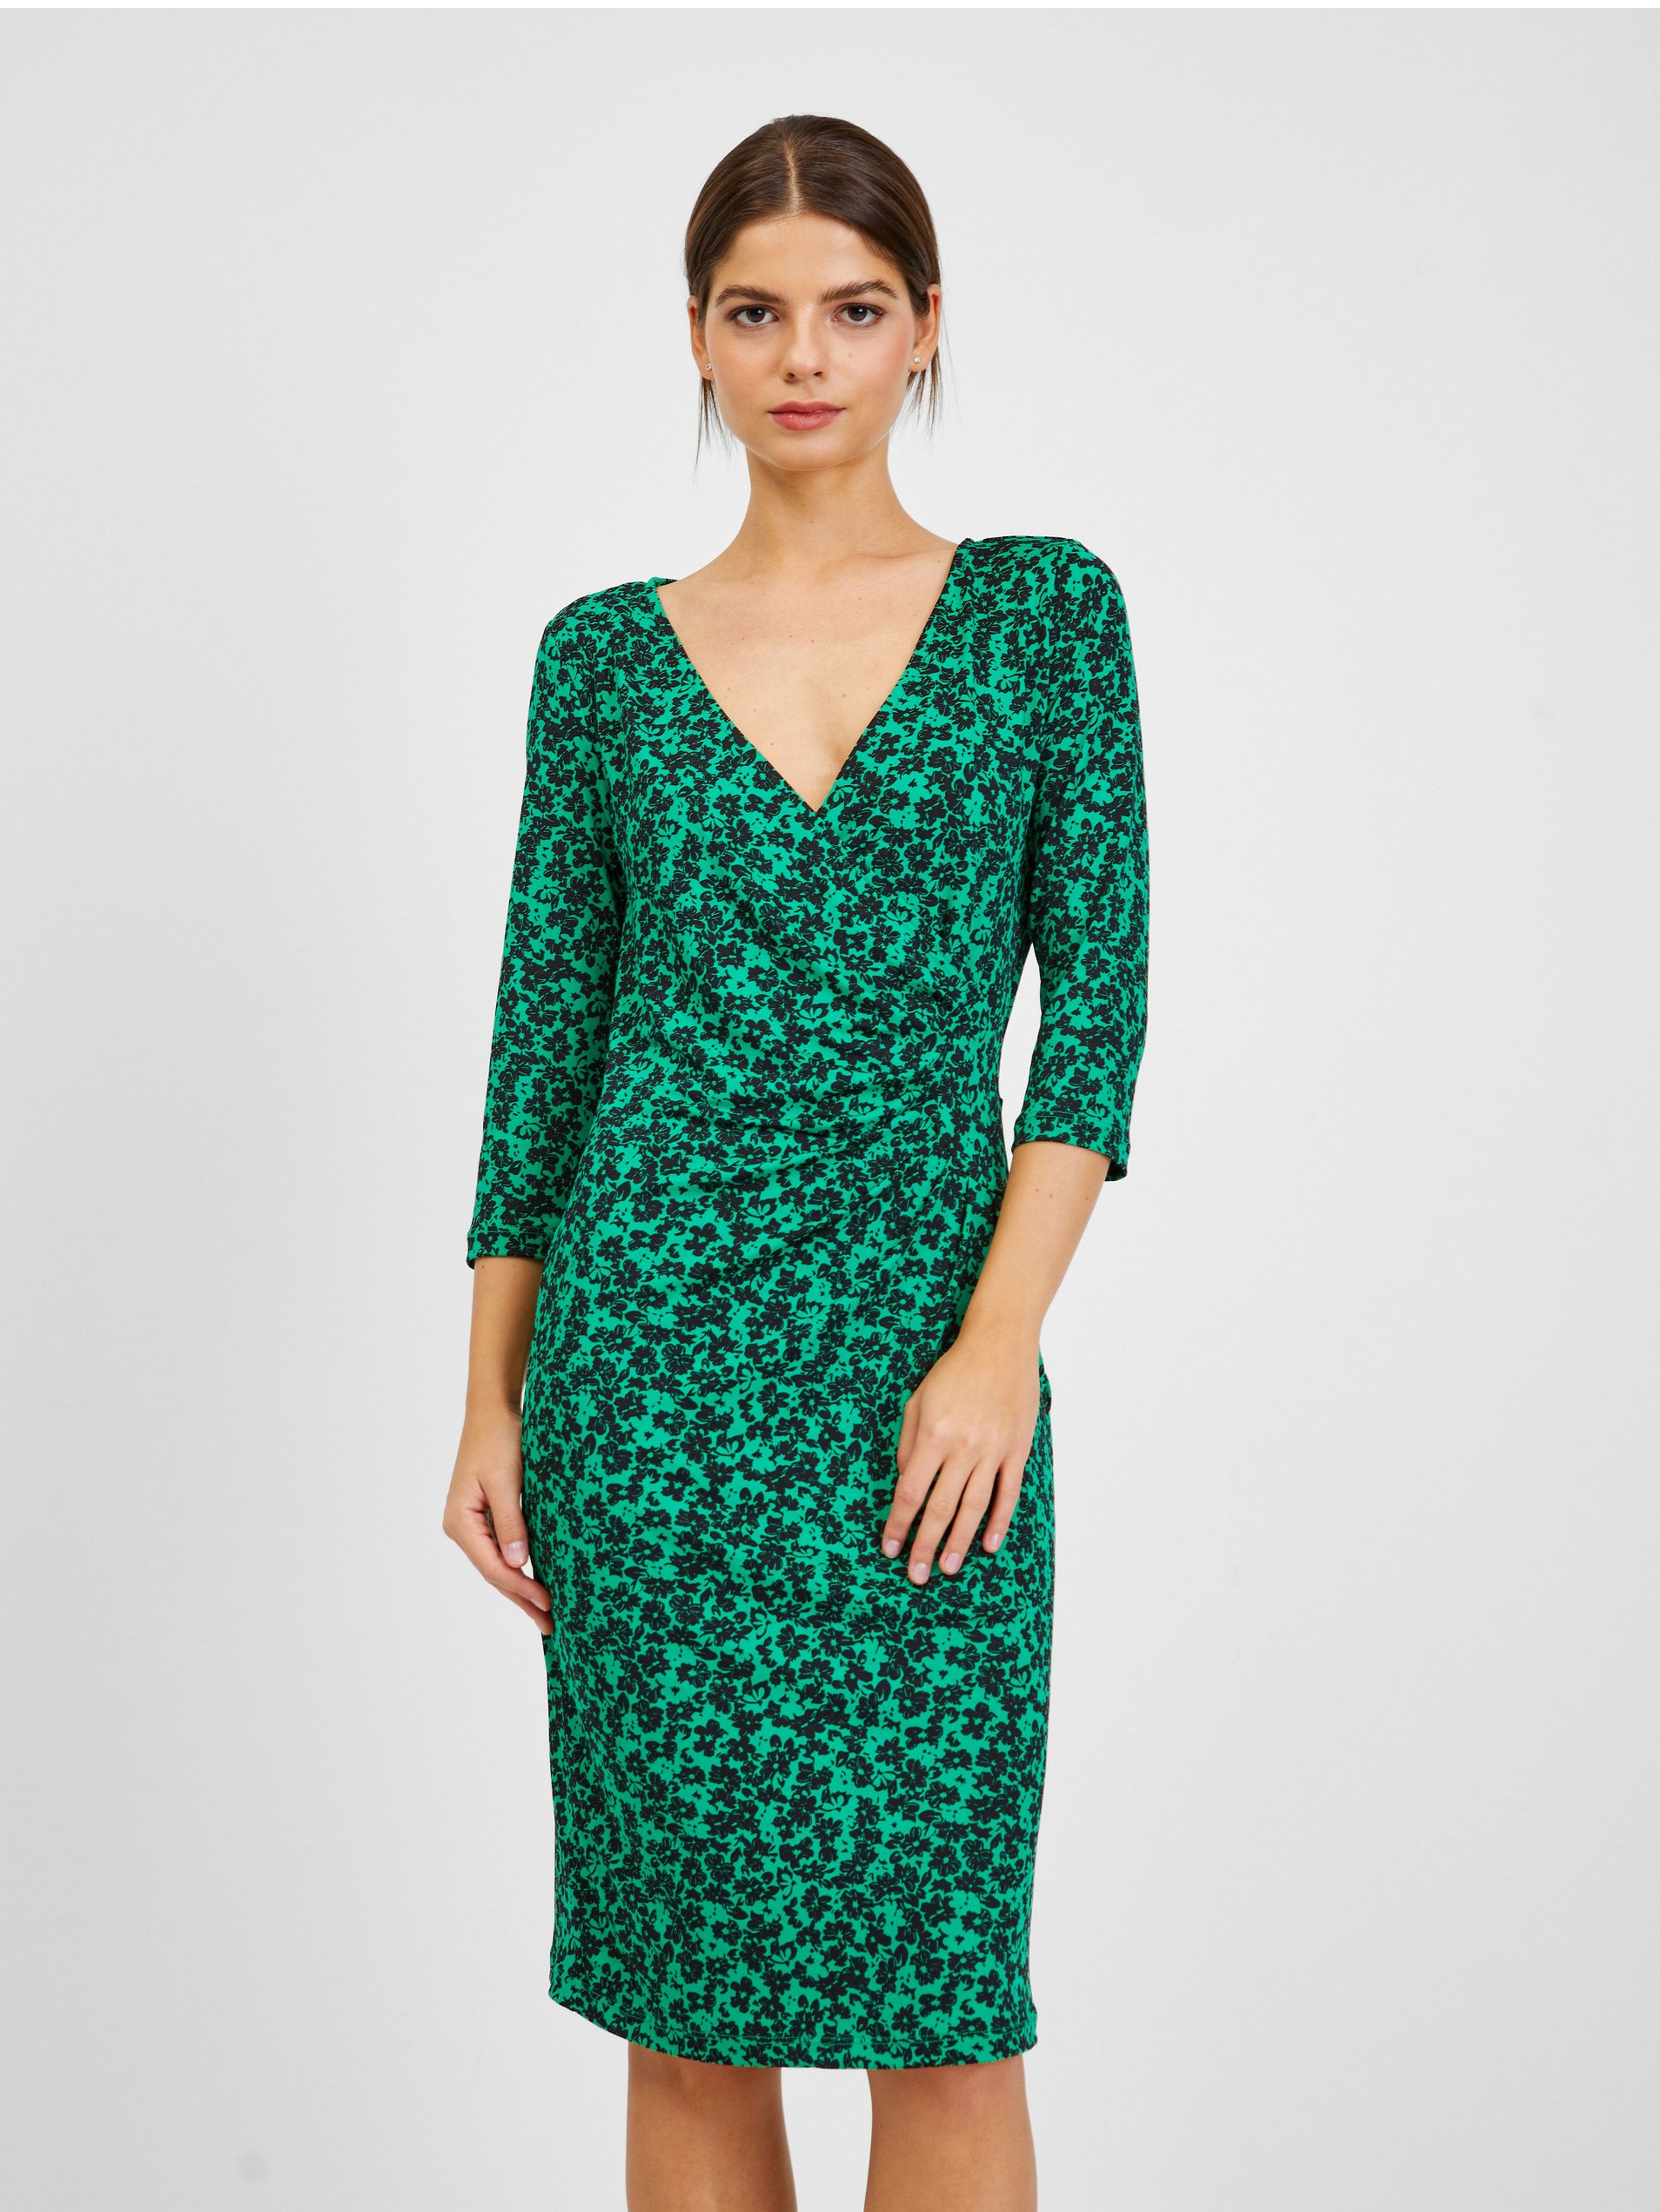 ORSAY fekete-zöld virágmintás női ruha